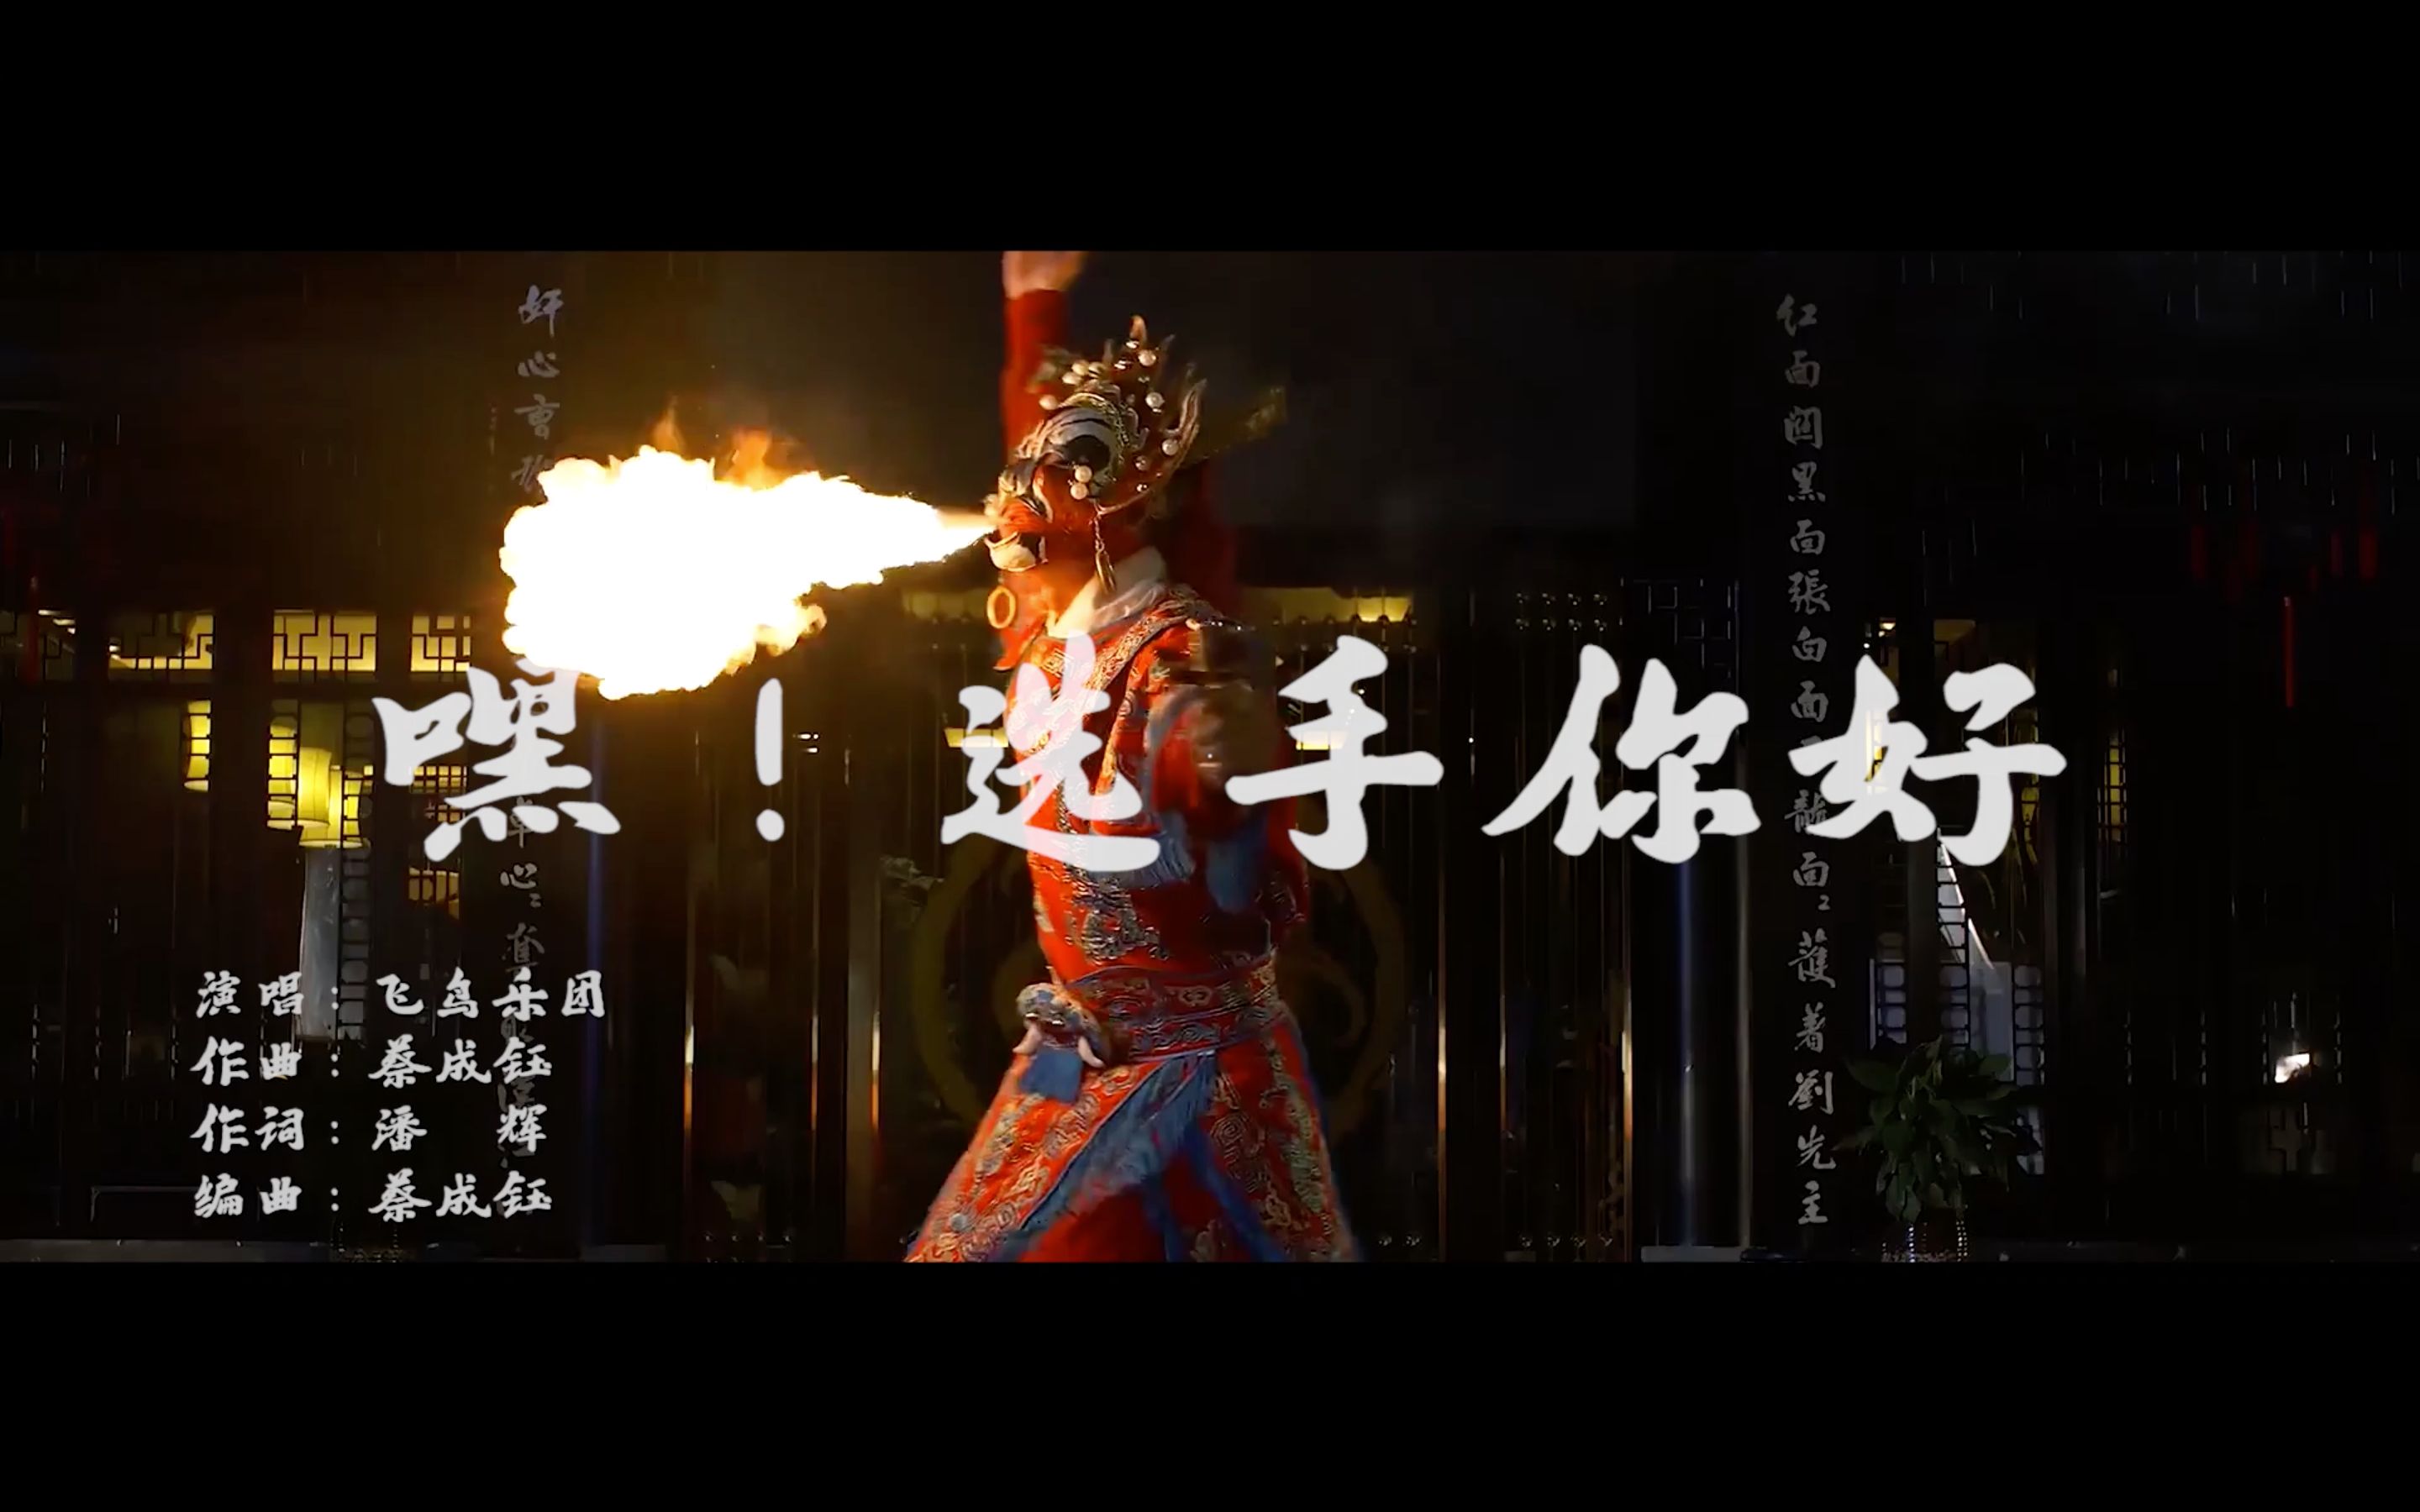 中国音乐团队制作S10九国语言欢迎曲  为全球战队加油助威